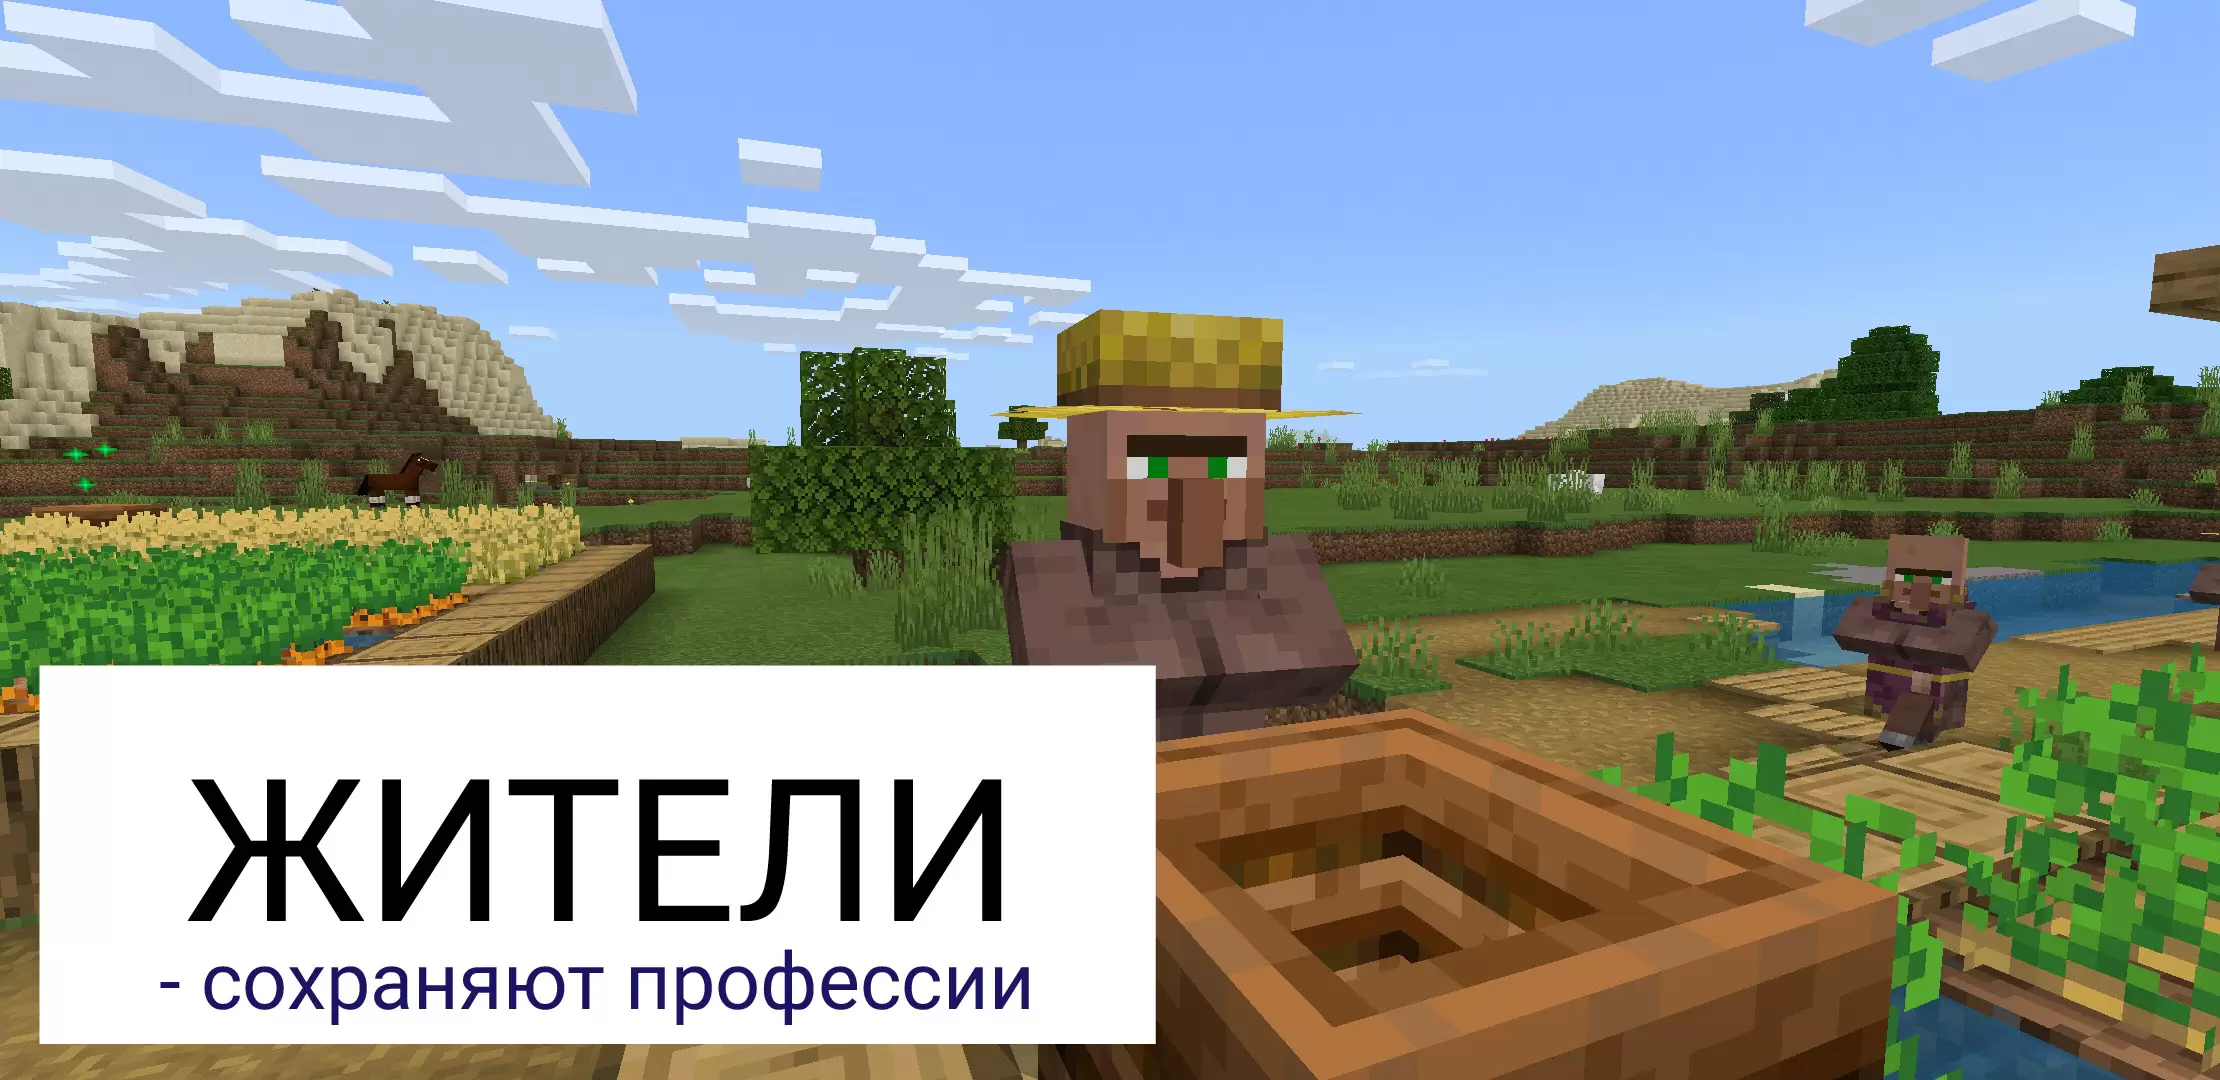 A Minecraft lakóinak fejlesztései 1.12.1